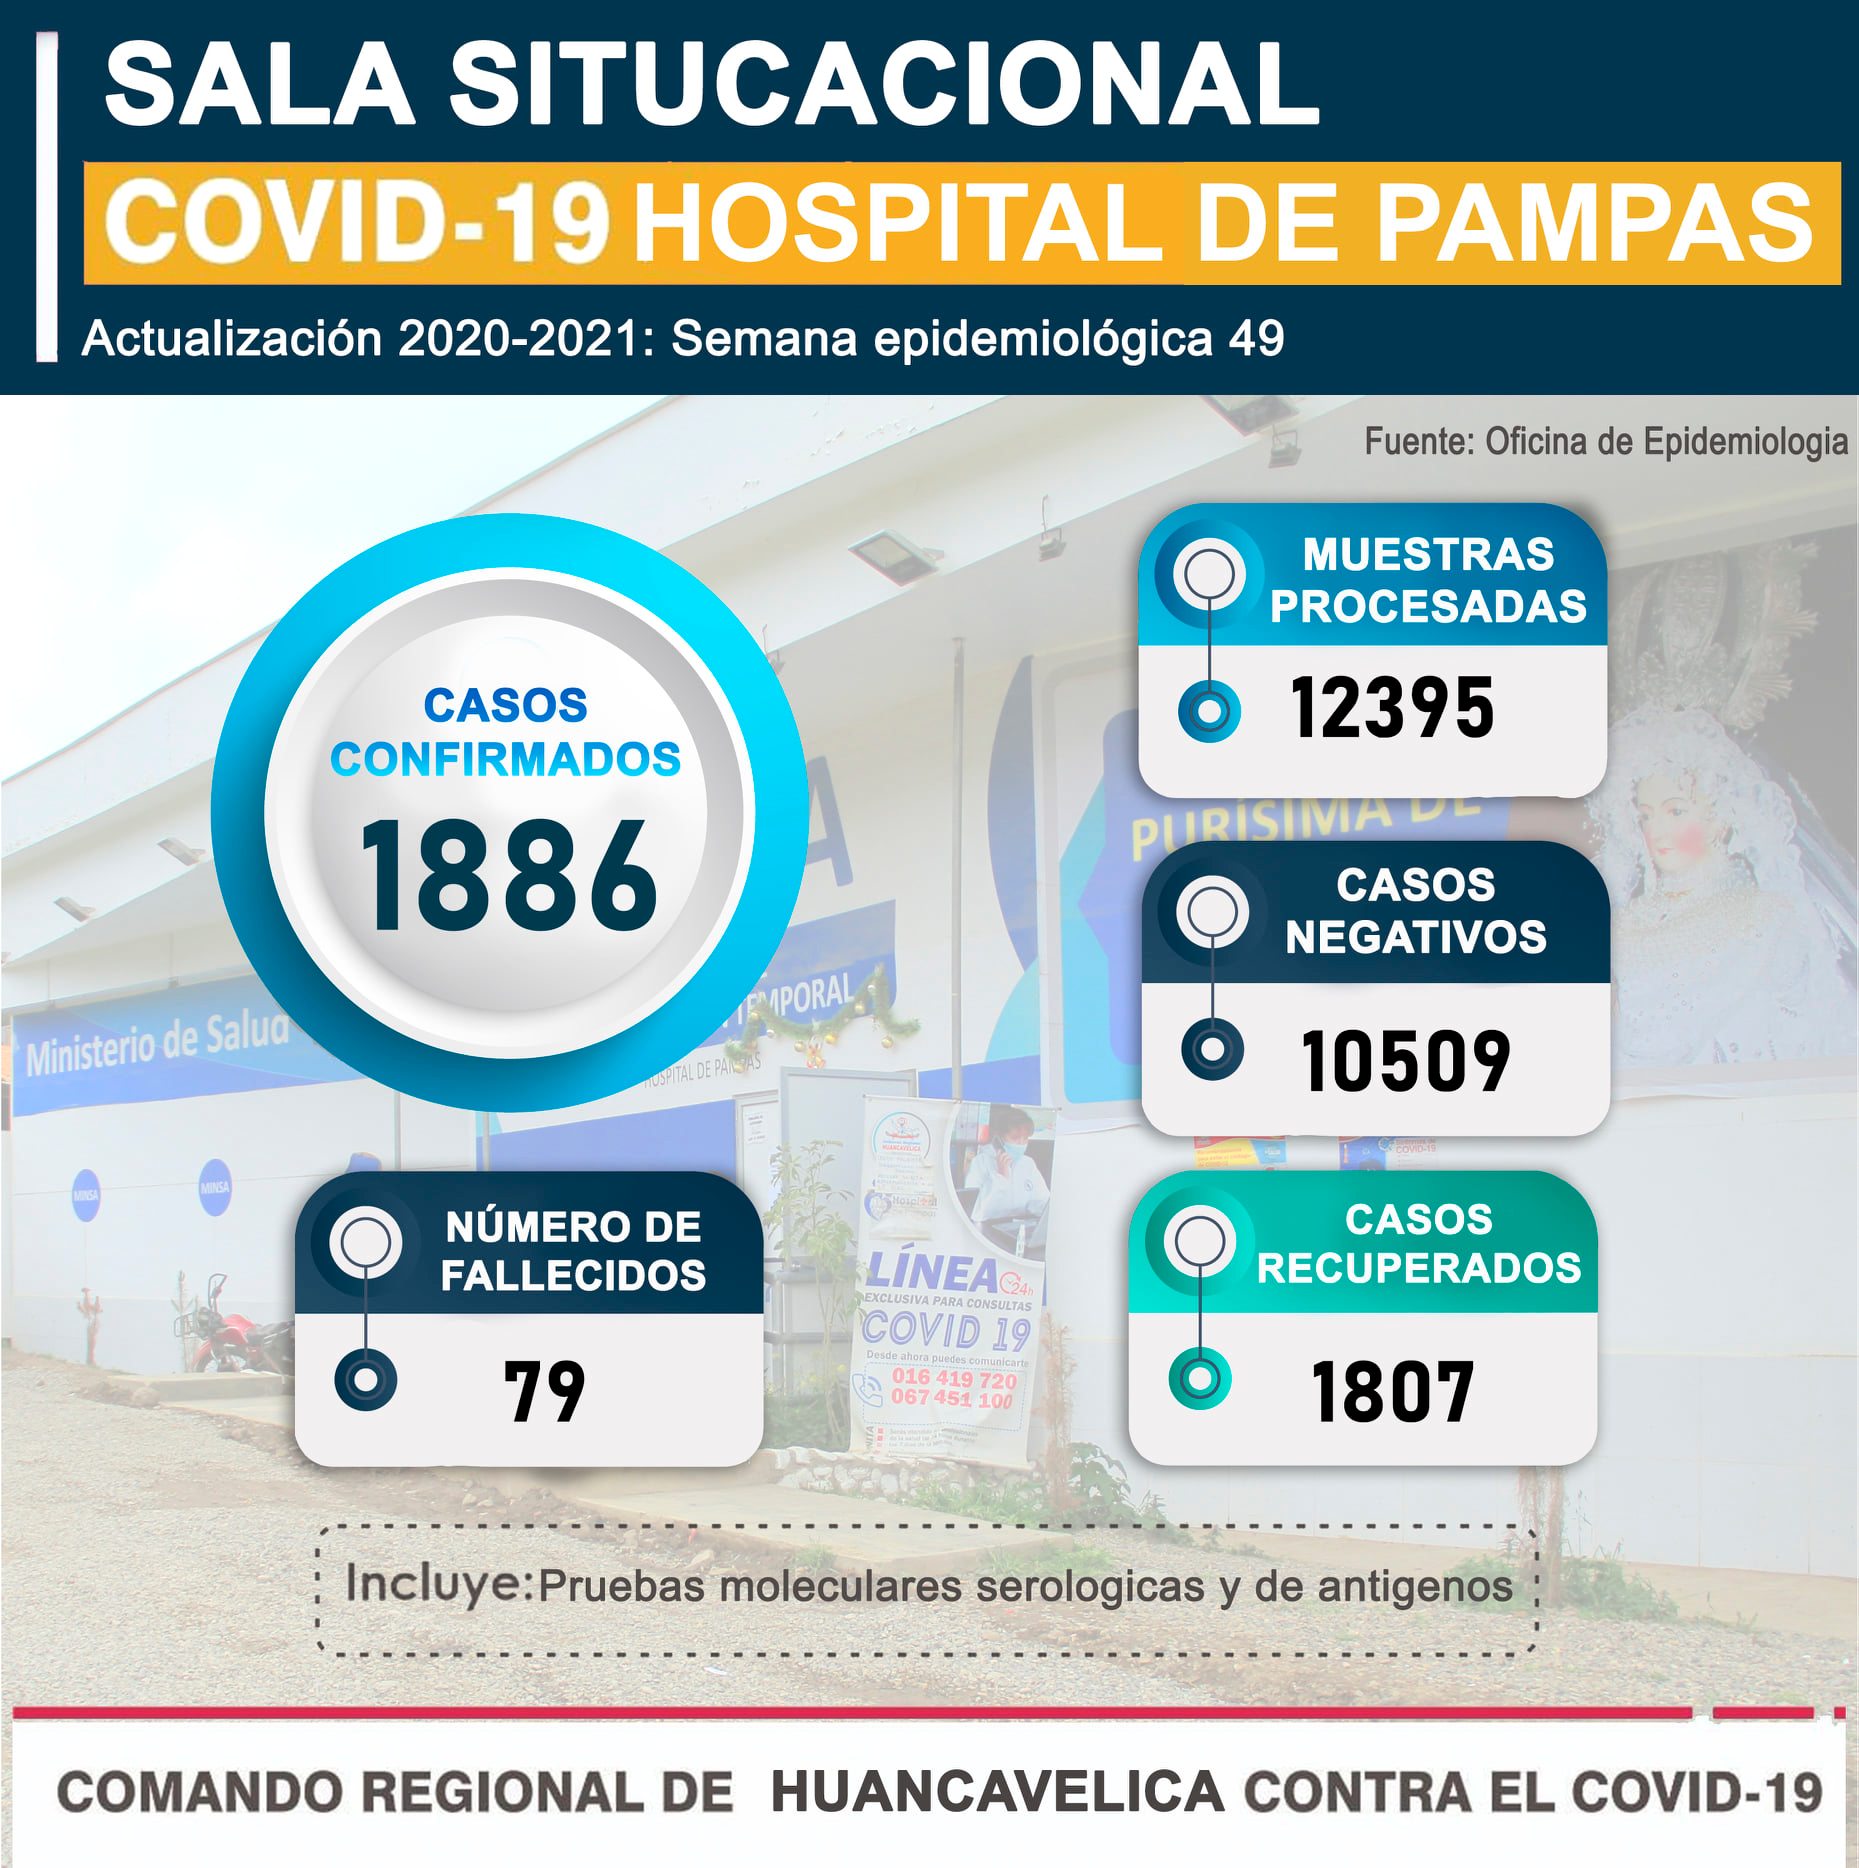 Informe sobre la situación COVID-19 en el Hospital de Pampas 2020-2021